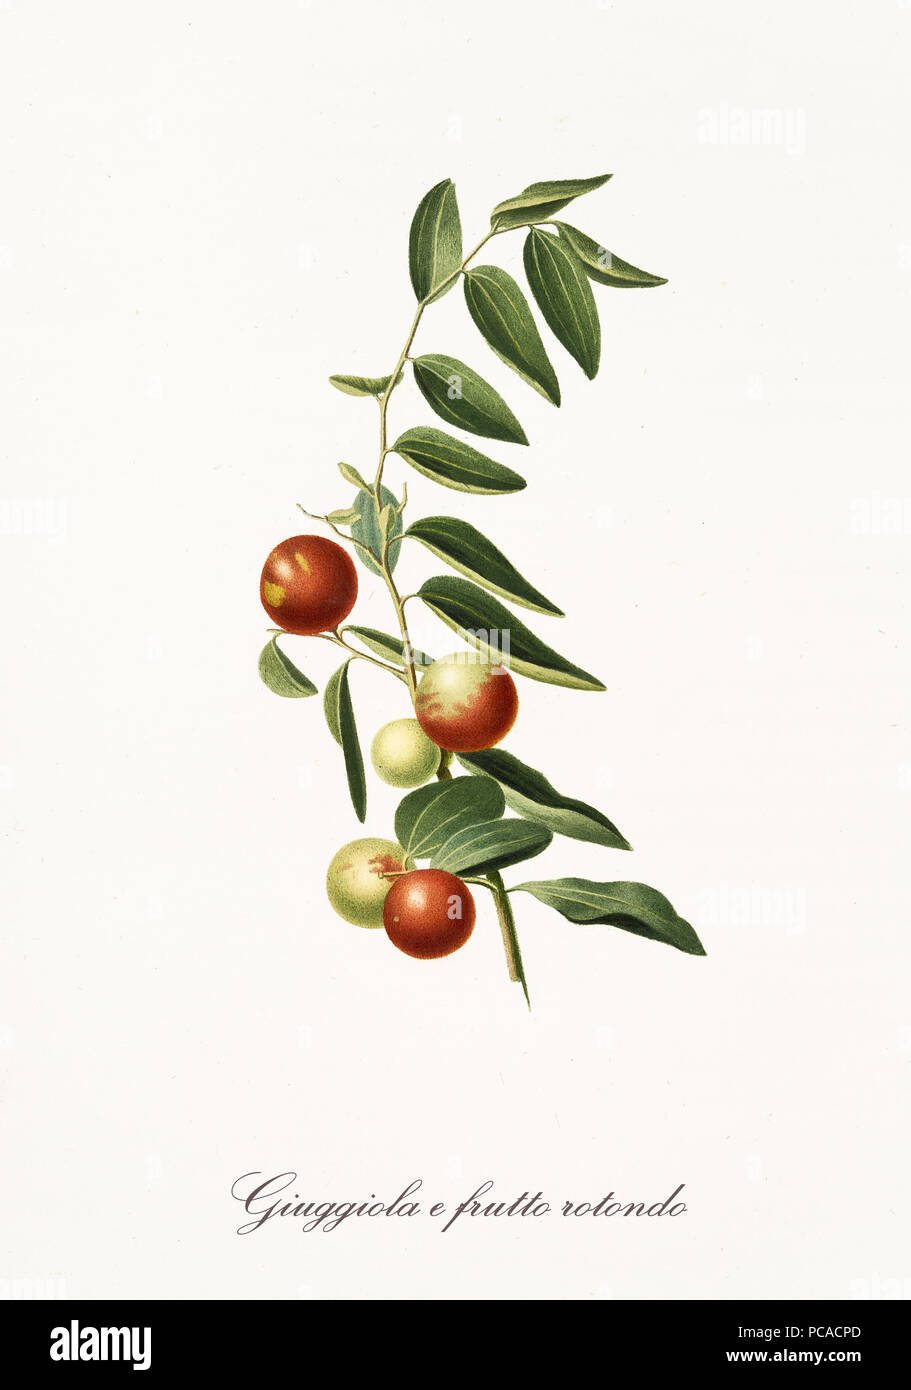 Red jujubes aislado en su única sucursal con hojas sobre fondo blanco. Ilustración botánica antigua realizada con una acuarela detallada por Giorgio Gallesio en Italia 1817,1839 Foto de stock